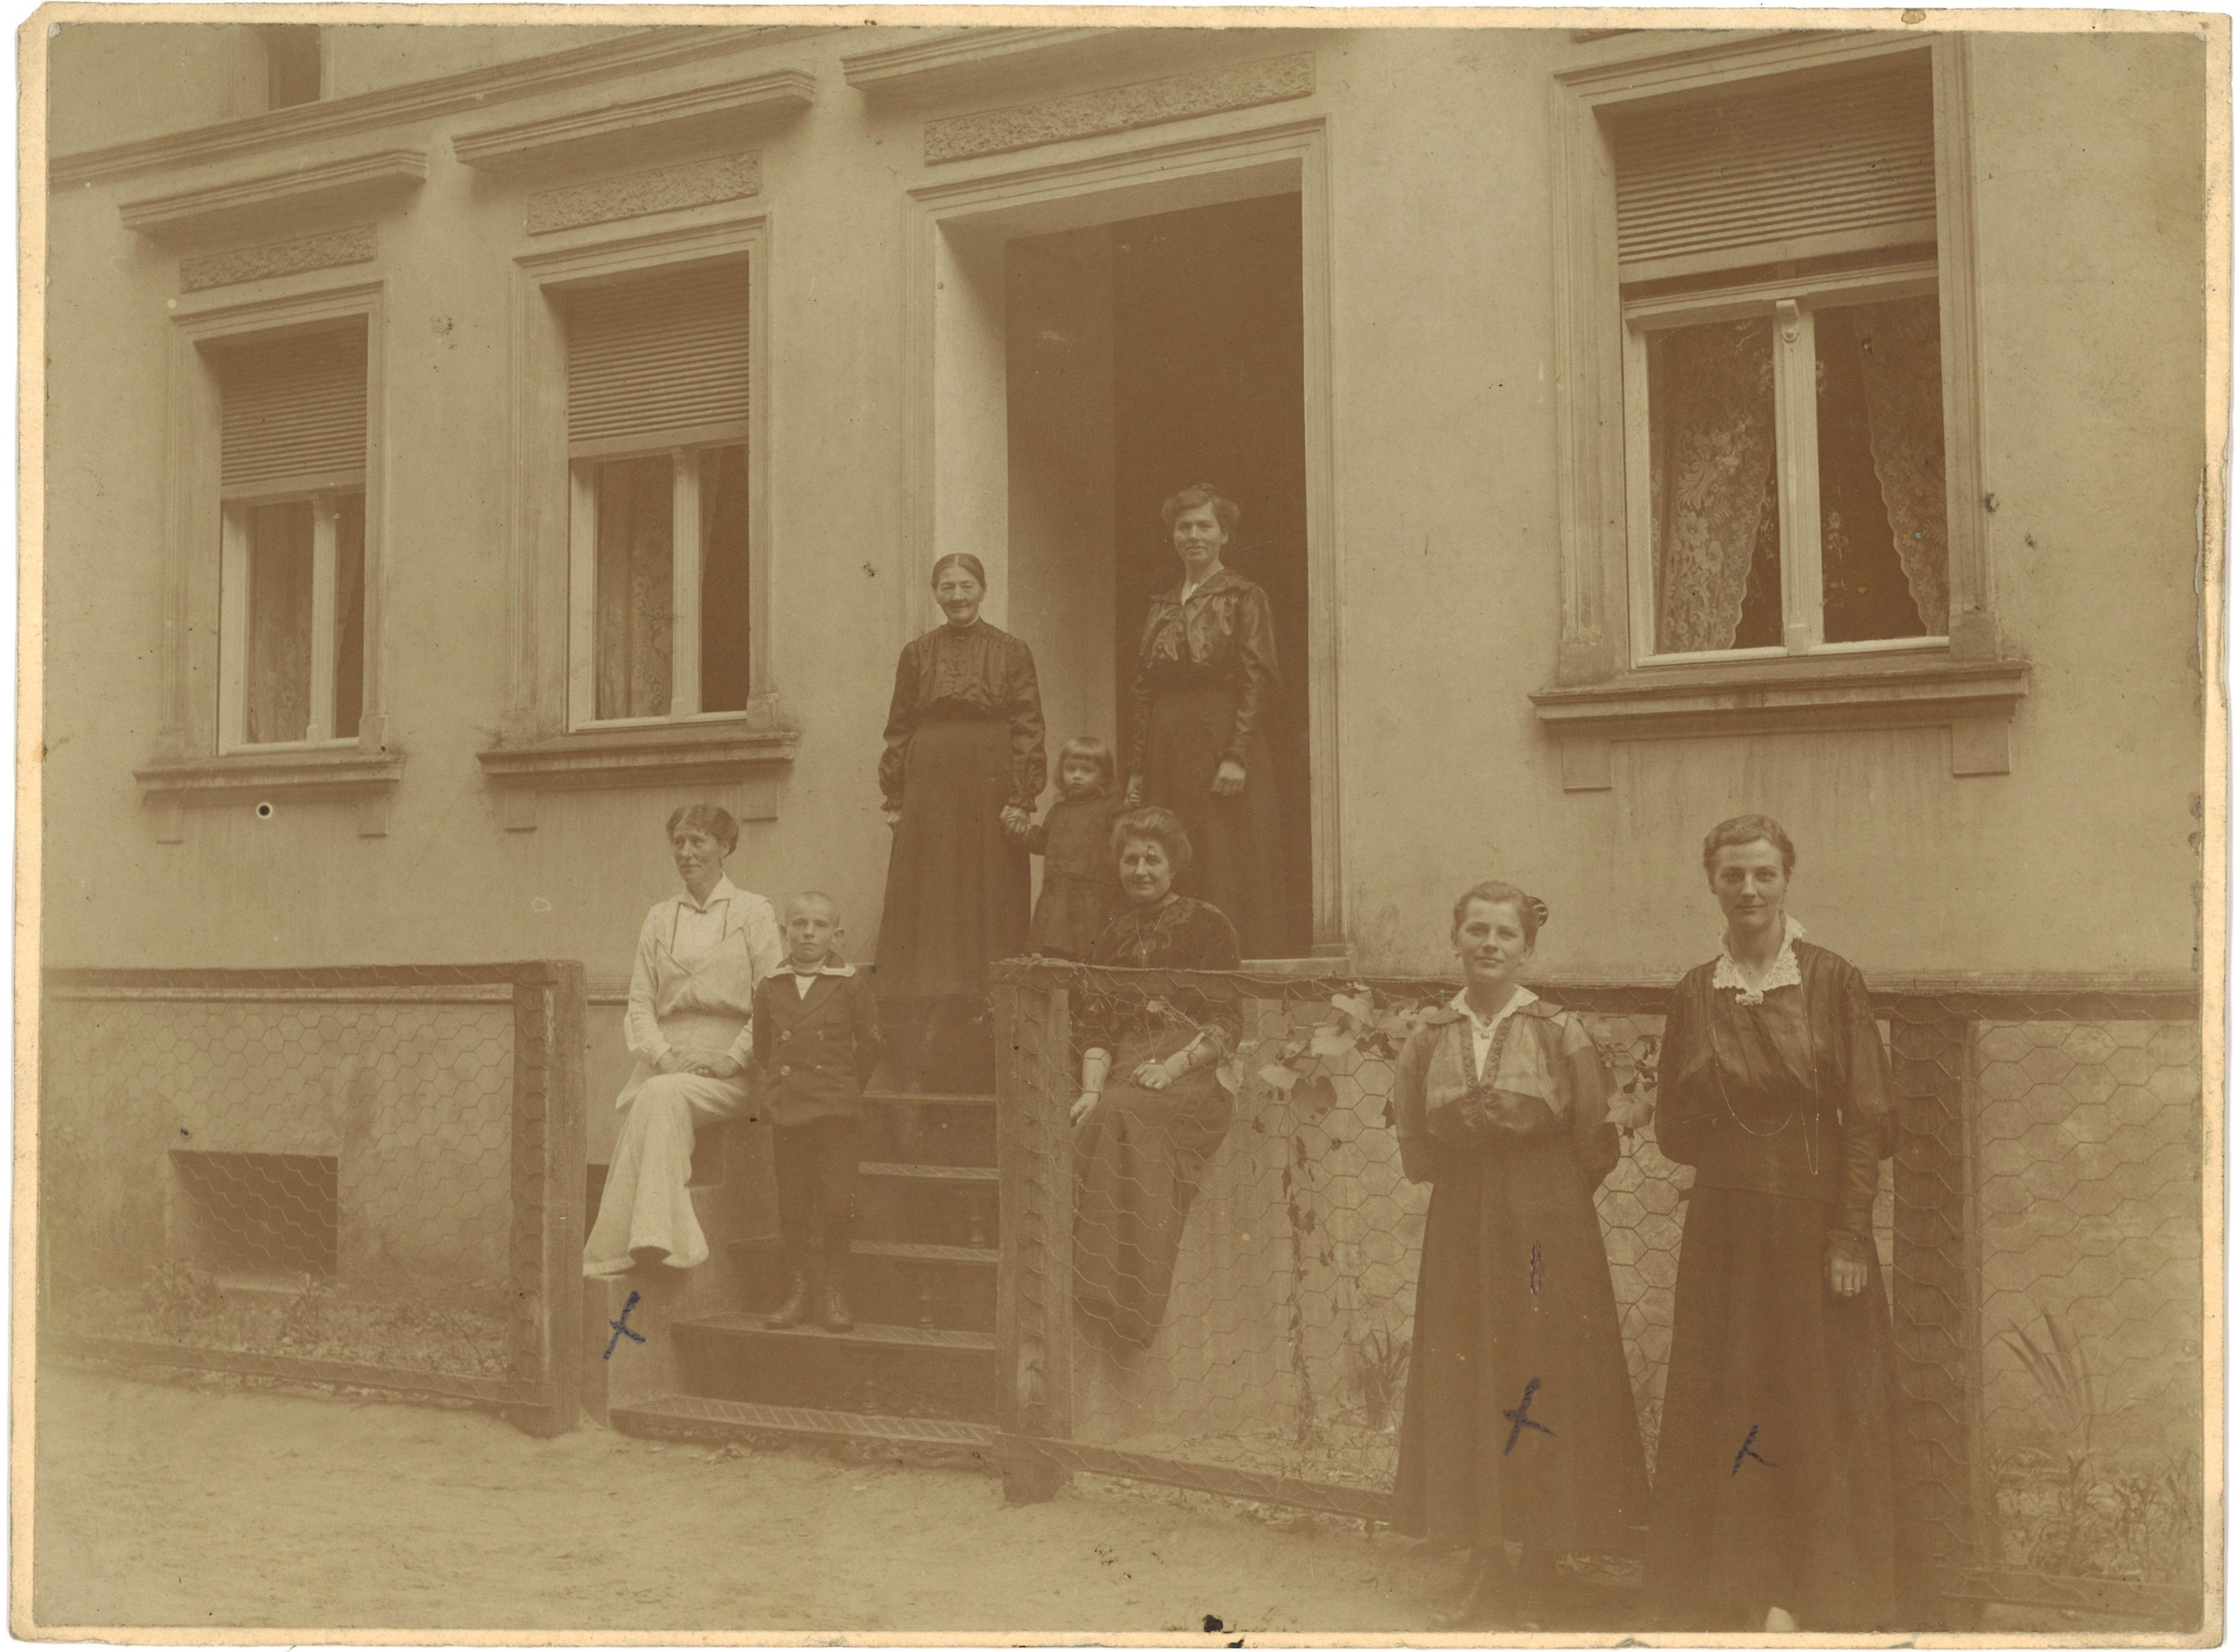 Schönwalde (Kr. Osthavelland): Bauernhaus Engel, Gruppenbild am Eingang 1917/18 (Landesgeschichtliche Vereinigung für die Mark Brandenburg e.V., Archiv CC BY)